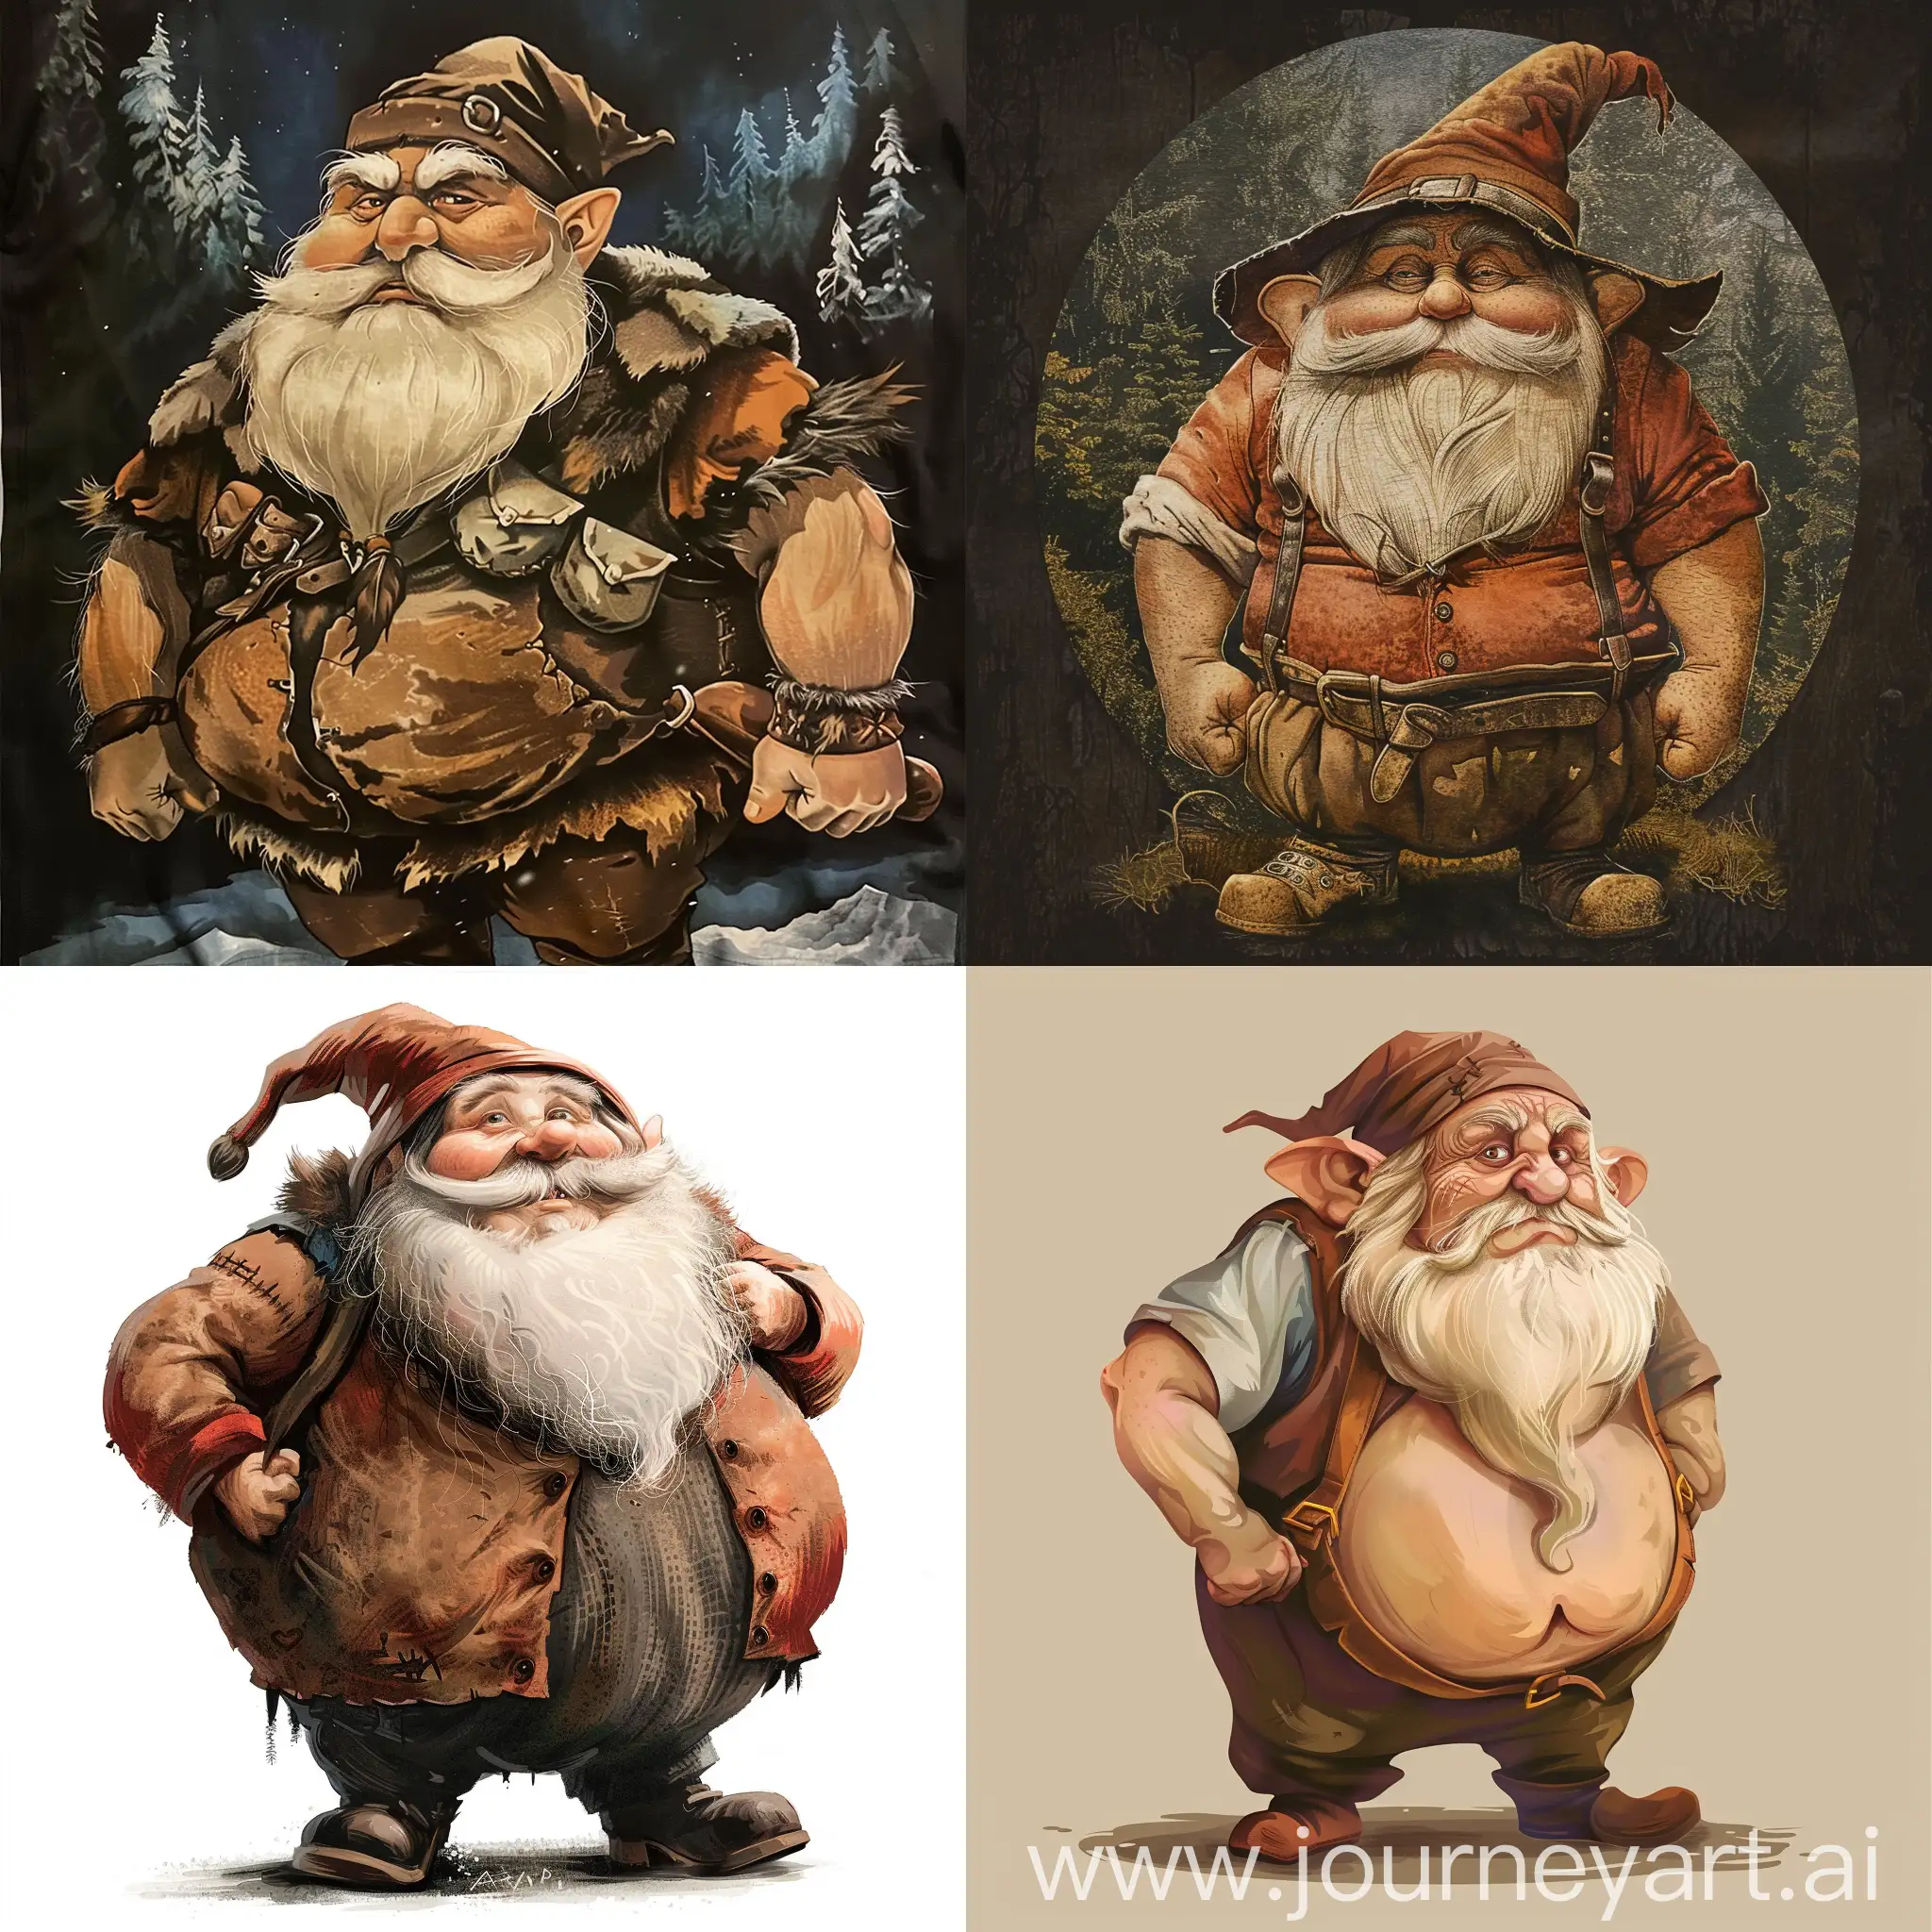 Charming-Fat-Dwarf-Named-Arseniy-on-TShirt